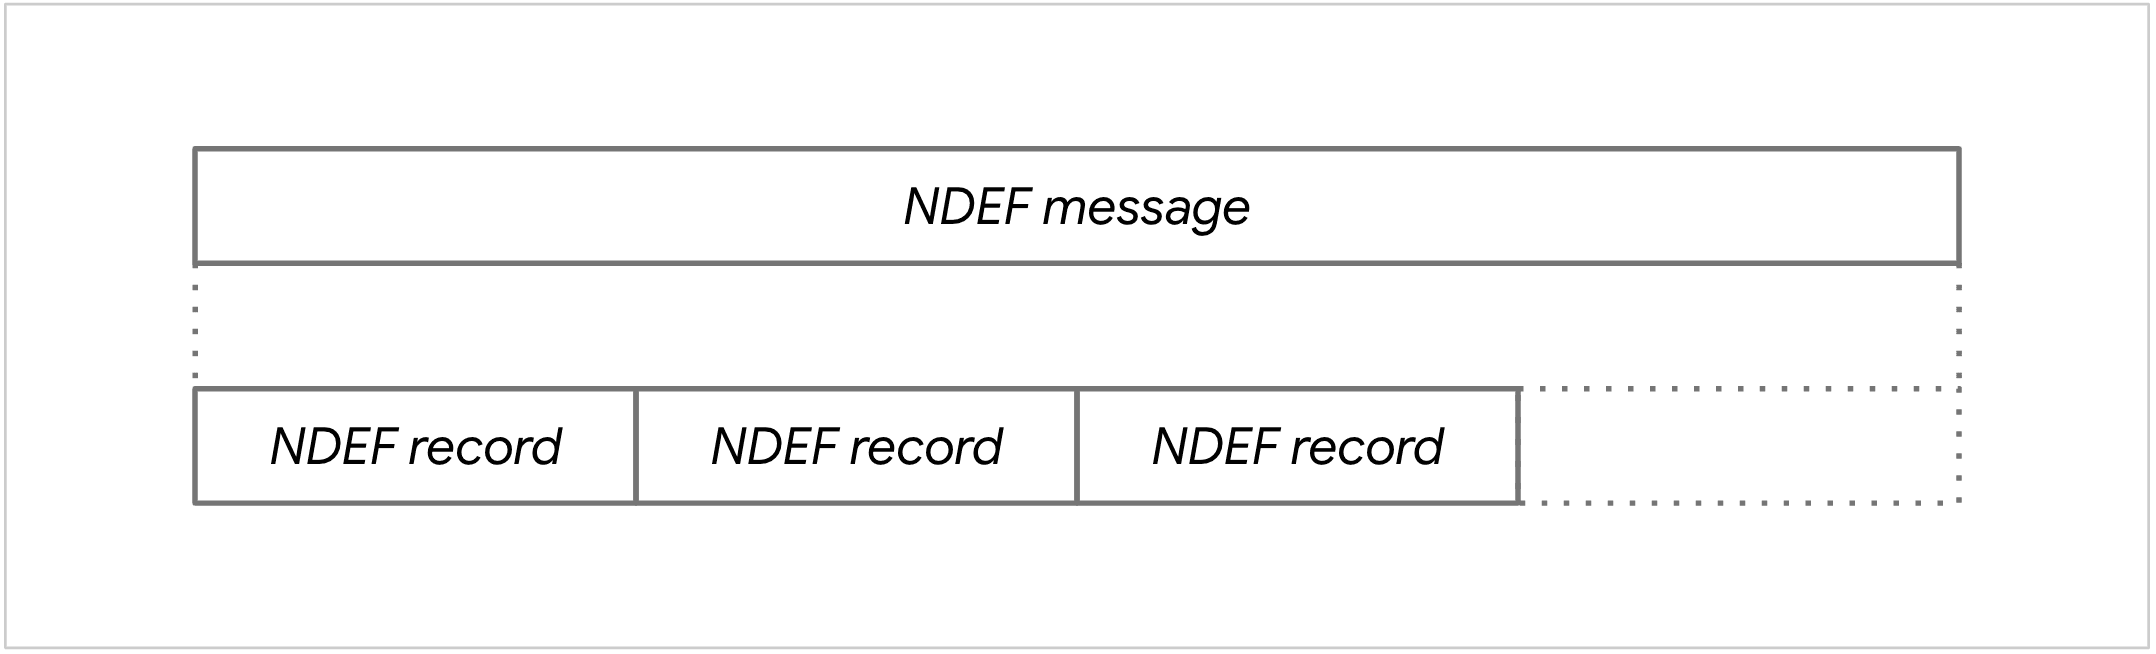 NDEF 訊息圖表